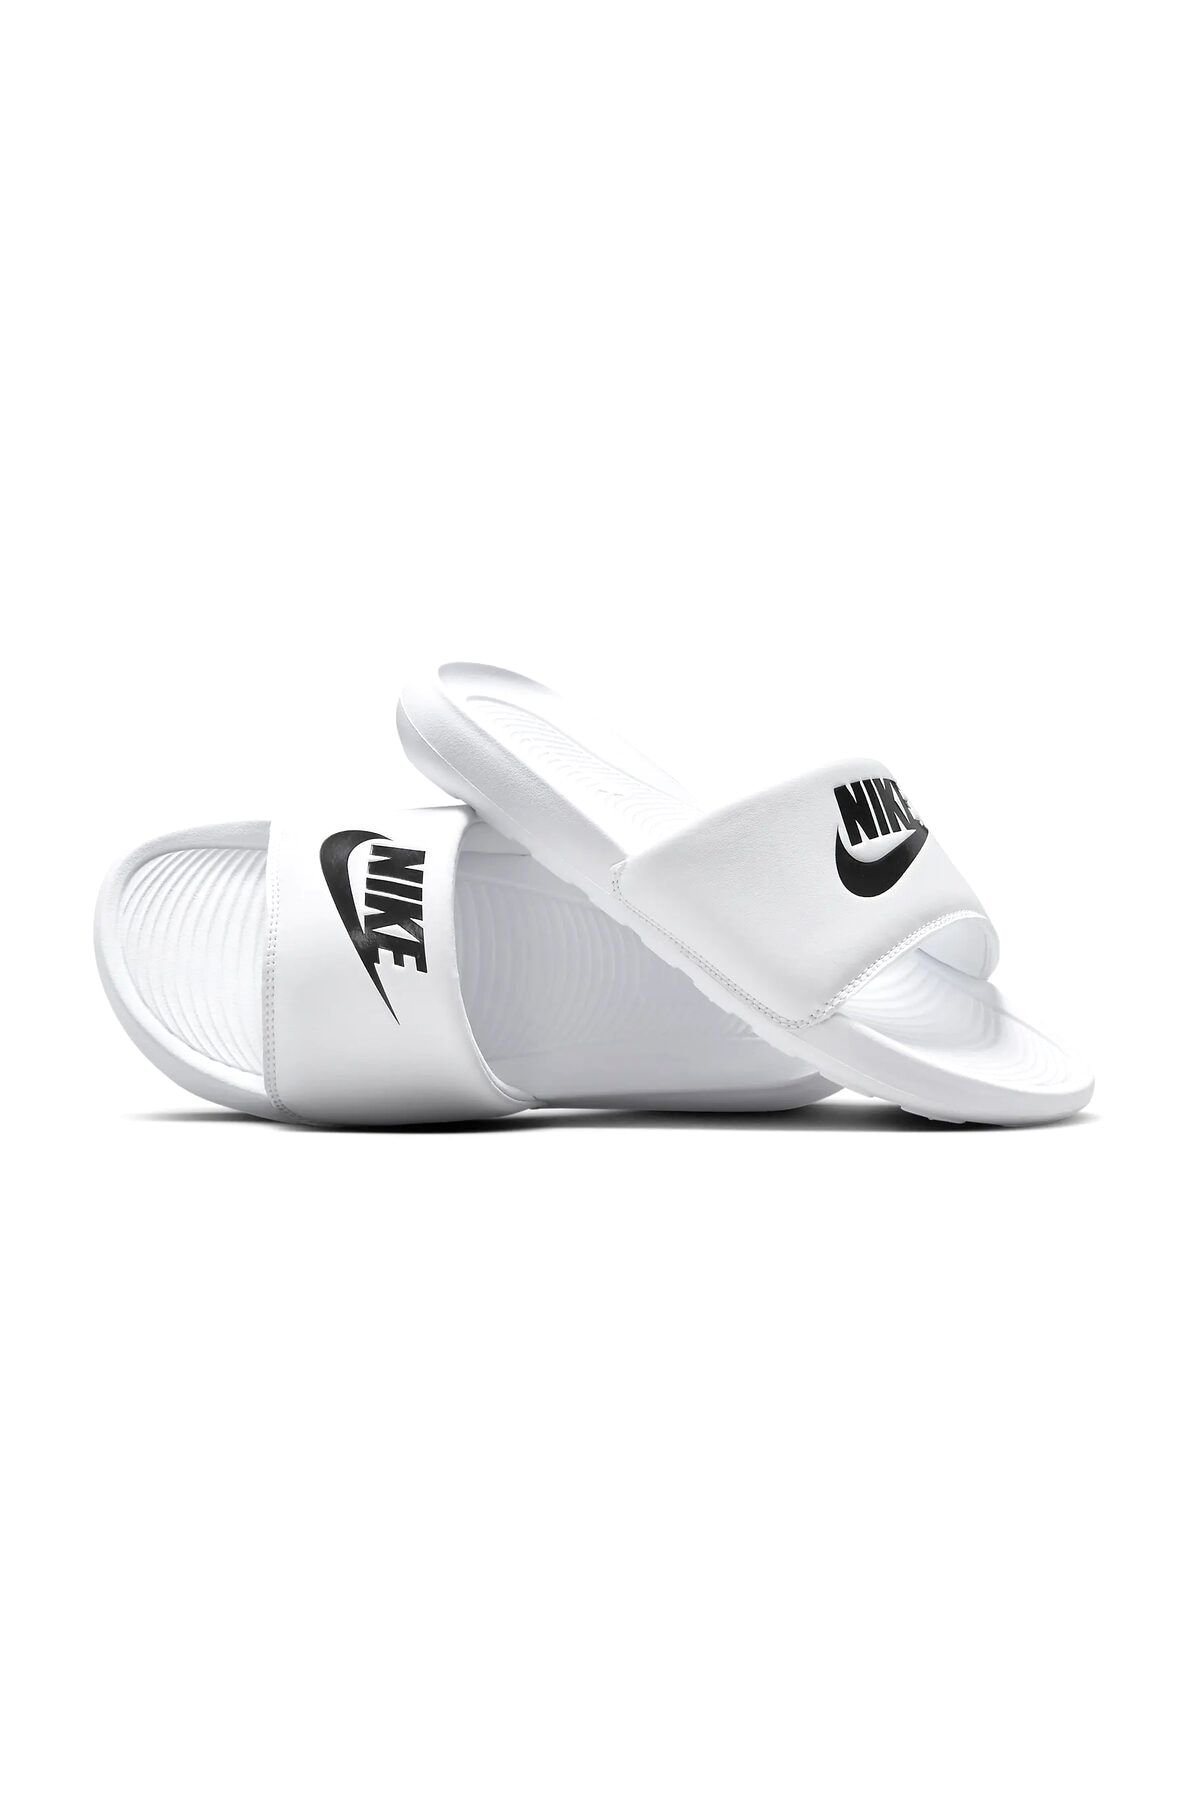 Nike W Victori One Slide Kadın Terlik Ayakkabı Cn9677-100-beyaz